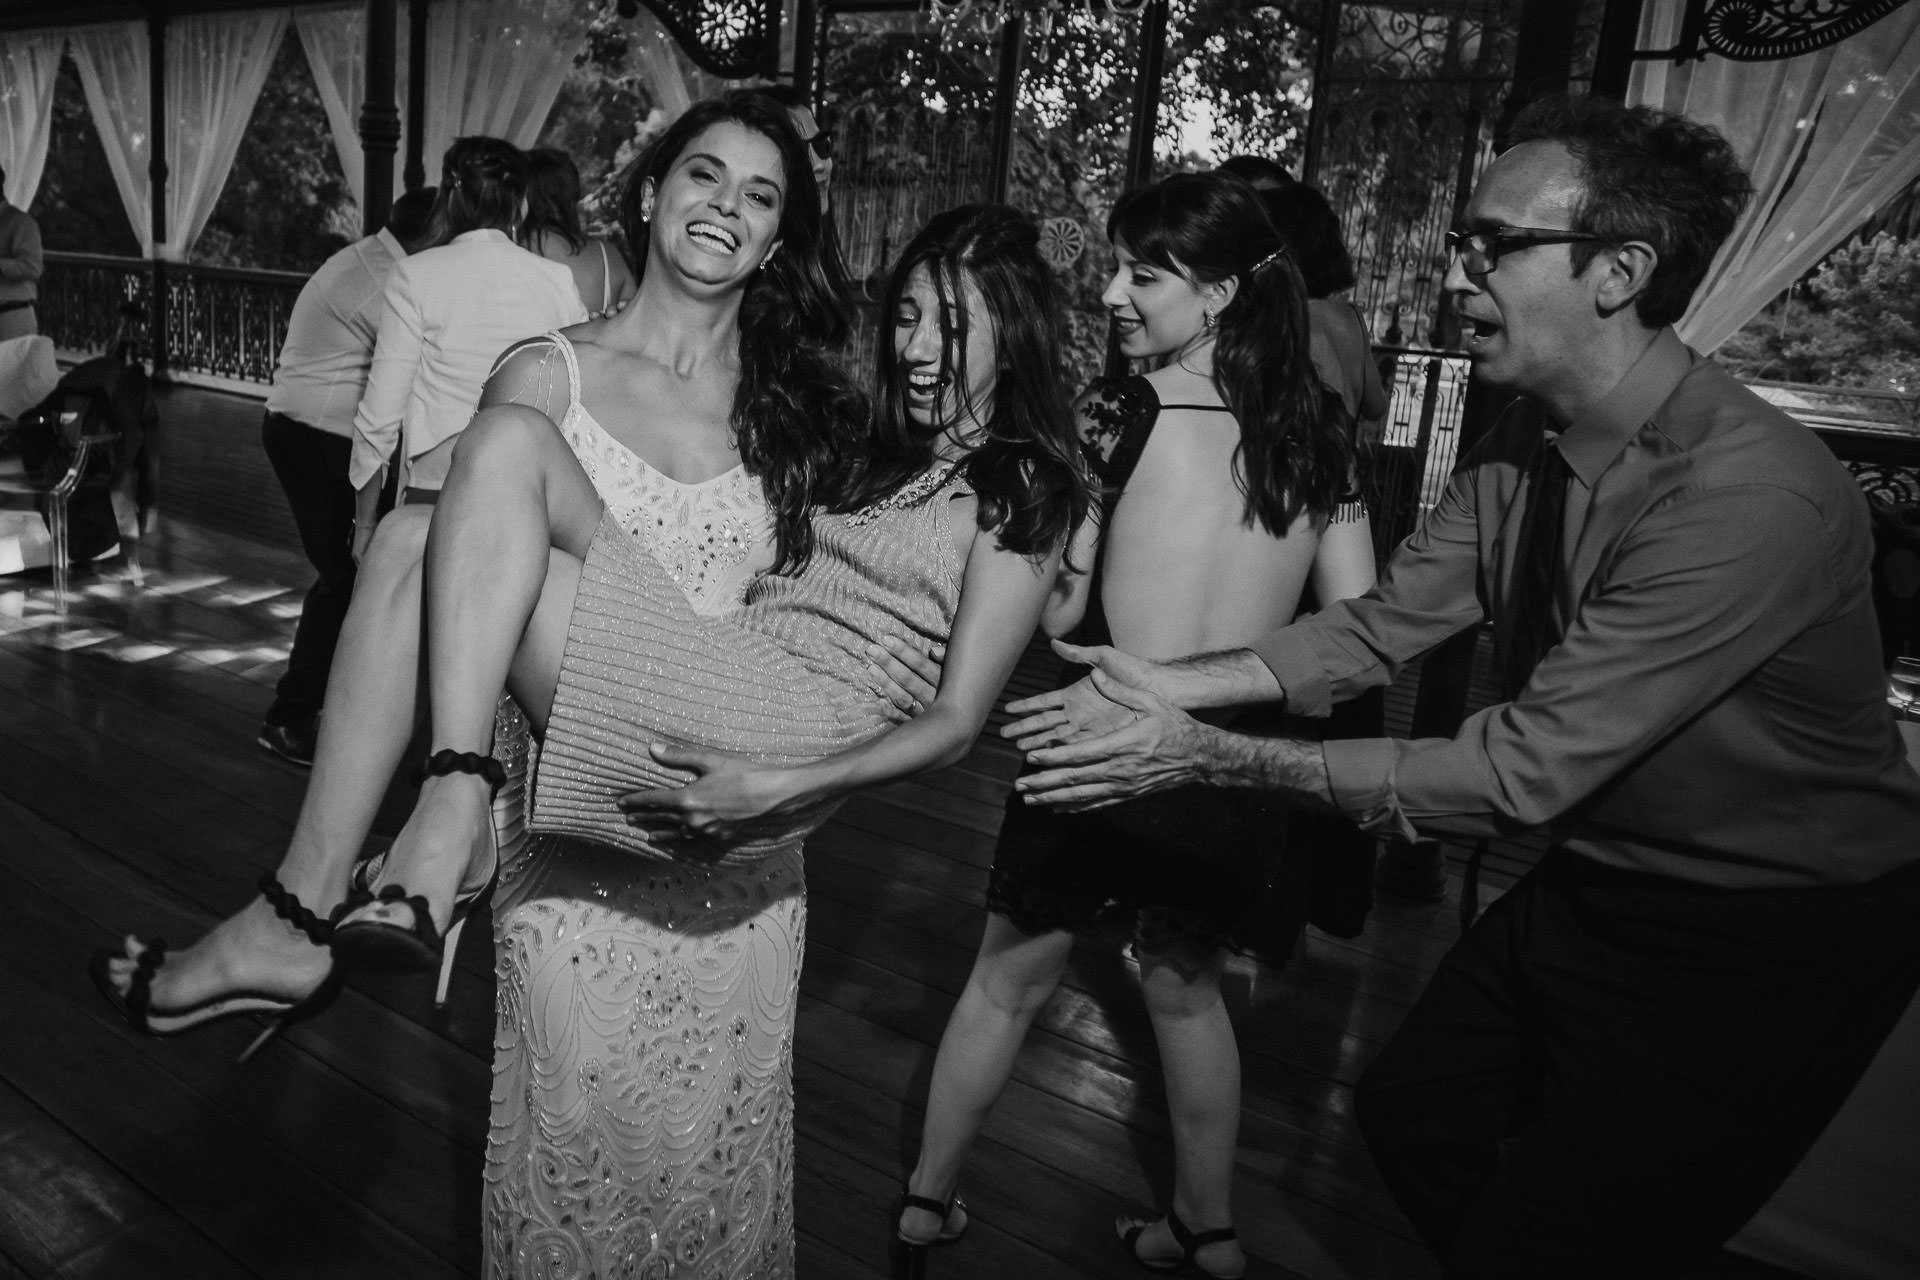 Boda en Campolobos, fotos espontáneas, fotógrafo de bodas, Norman Parunov